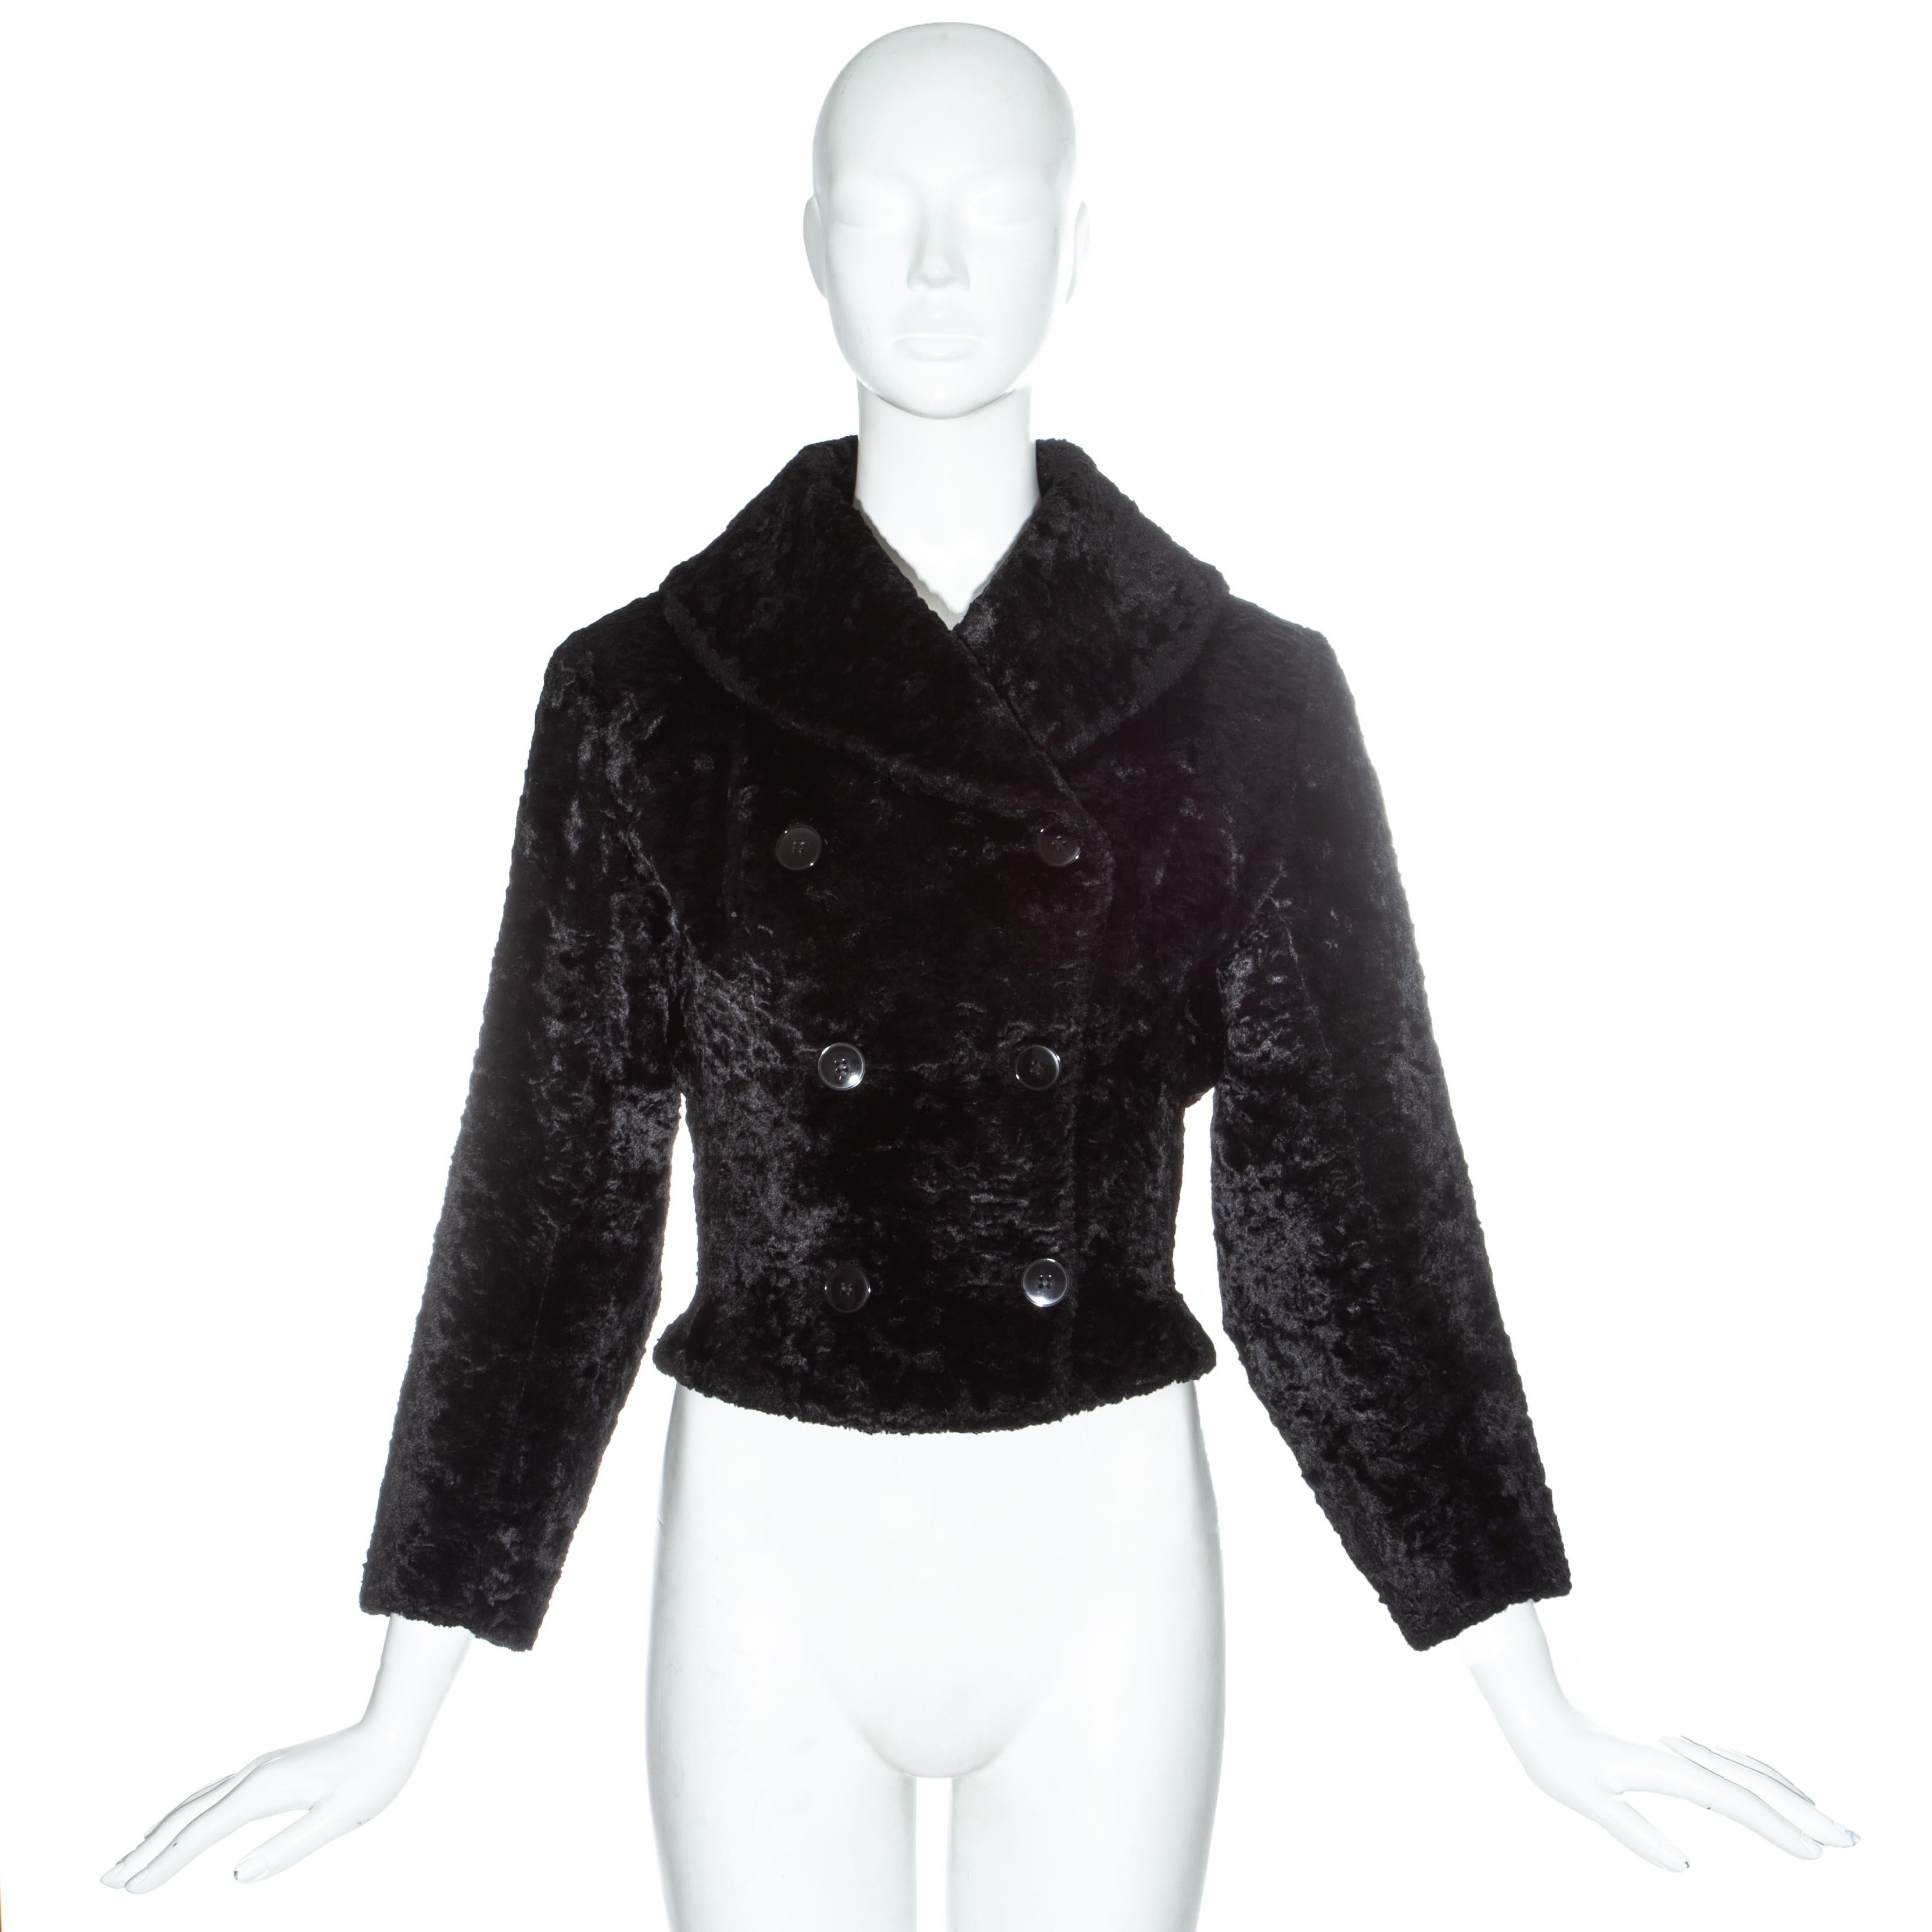 Azzedine Alaia - Veste double boutonnage en chenille noire avec revers châle et doublure en soie

Automne-Hiver 1992
